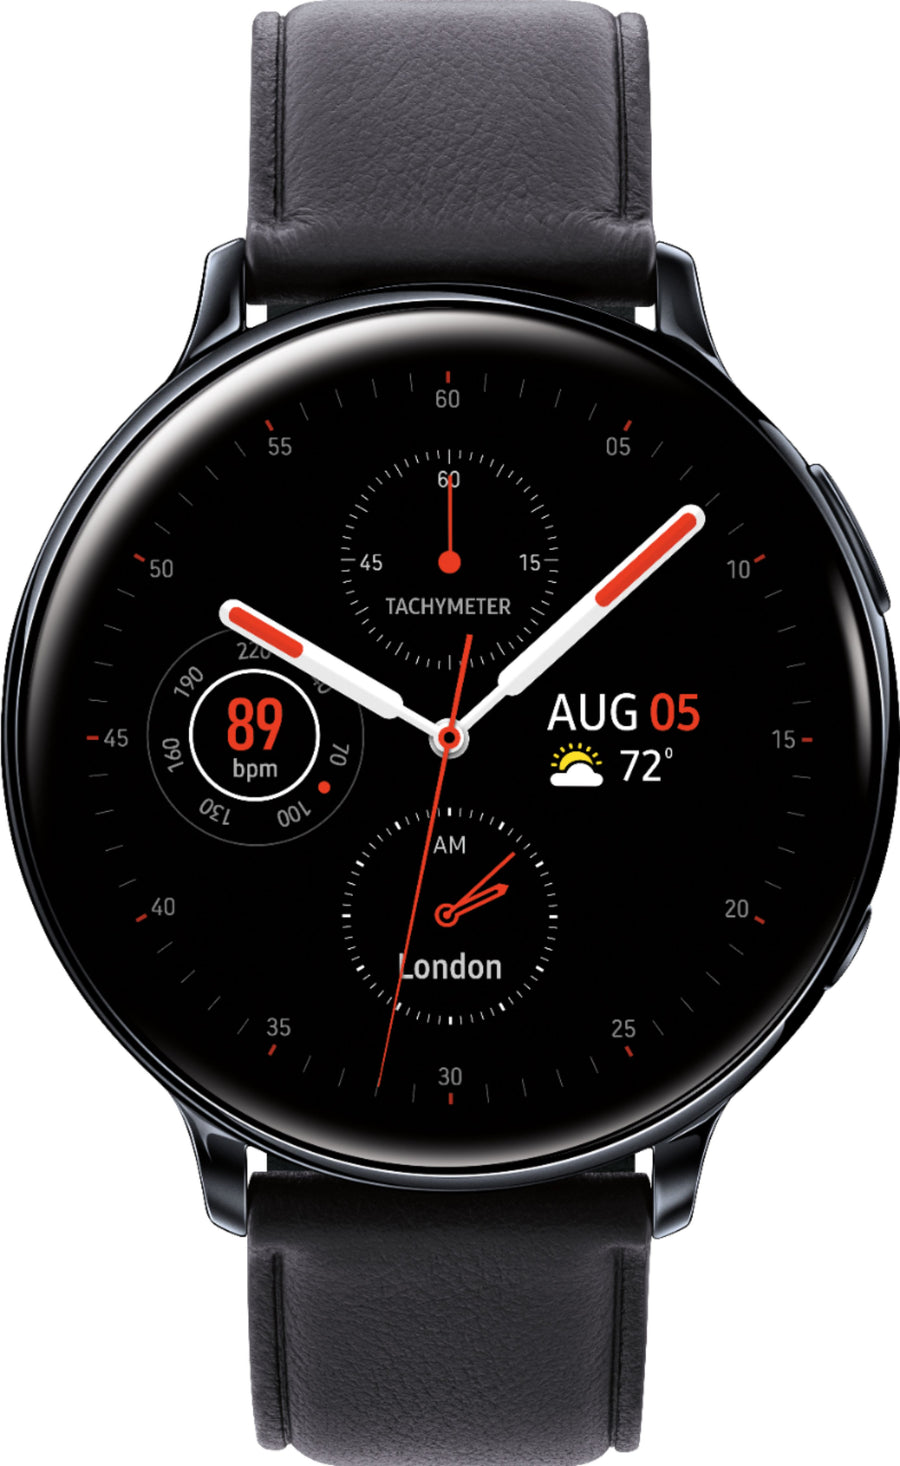 Samsung - Galaxy Watch Active2 Smartwatch 44mm Stainless Steel LTE (Unlocked) - Black_0